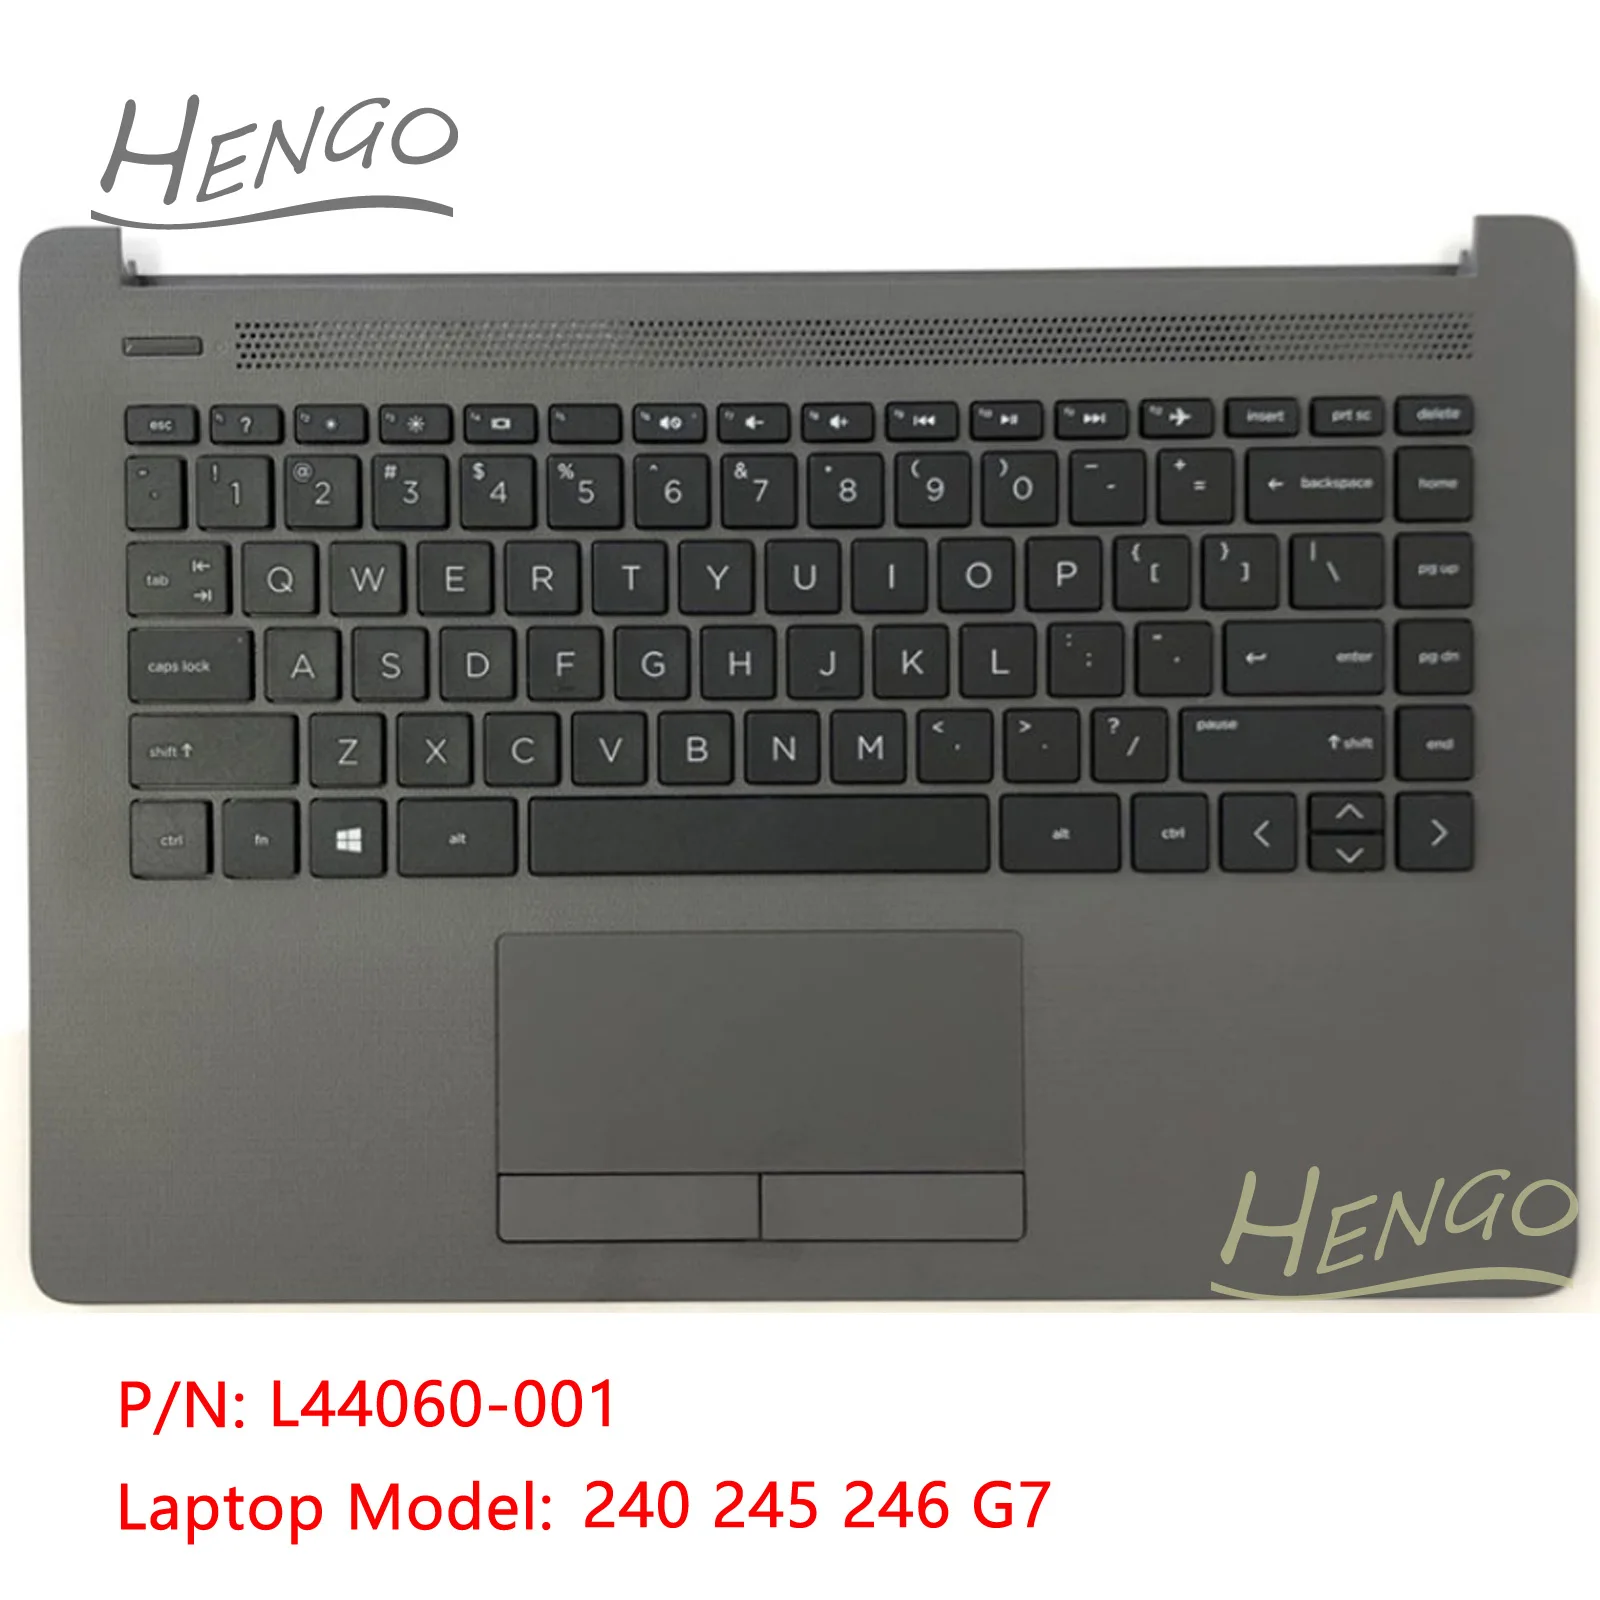 L44060-001 Серый Оригинальный Новый для HP 240 245 246 G7 Подставка для рук, клавиатура с подсветкой и тачпадом